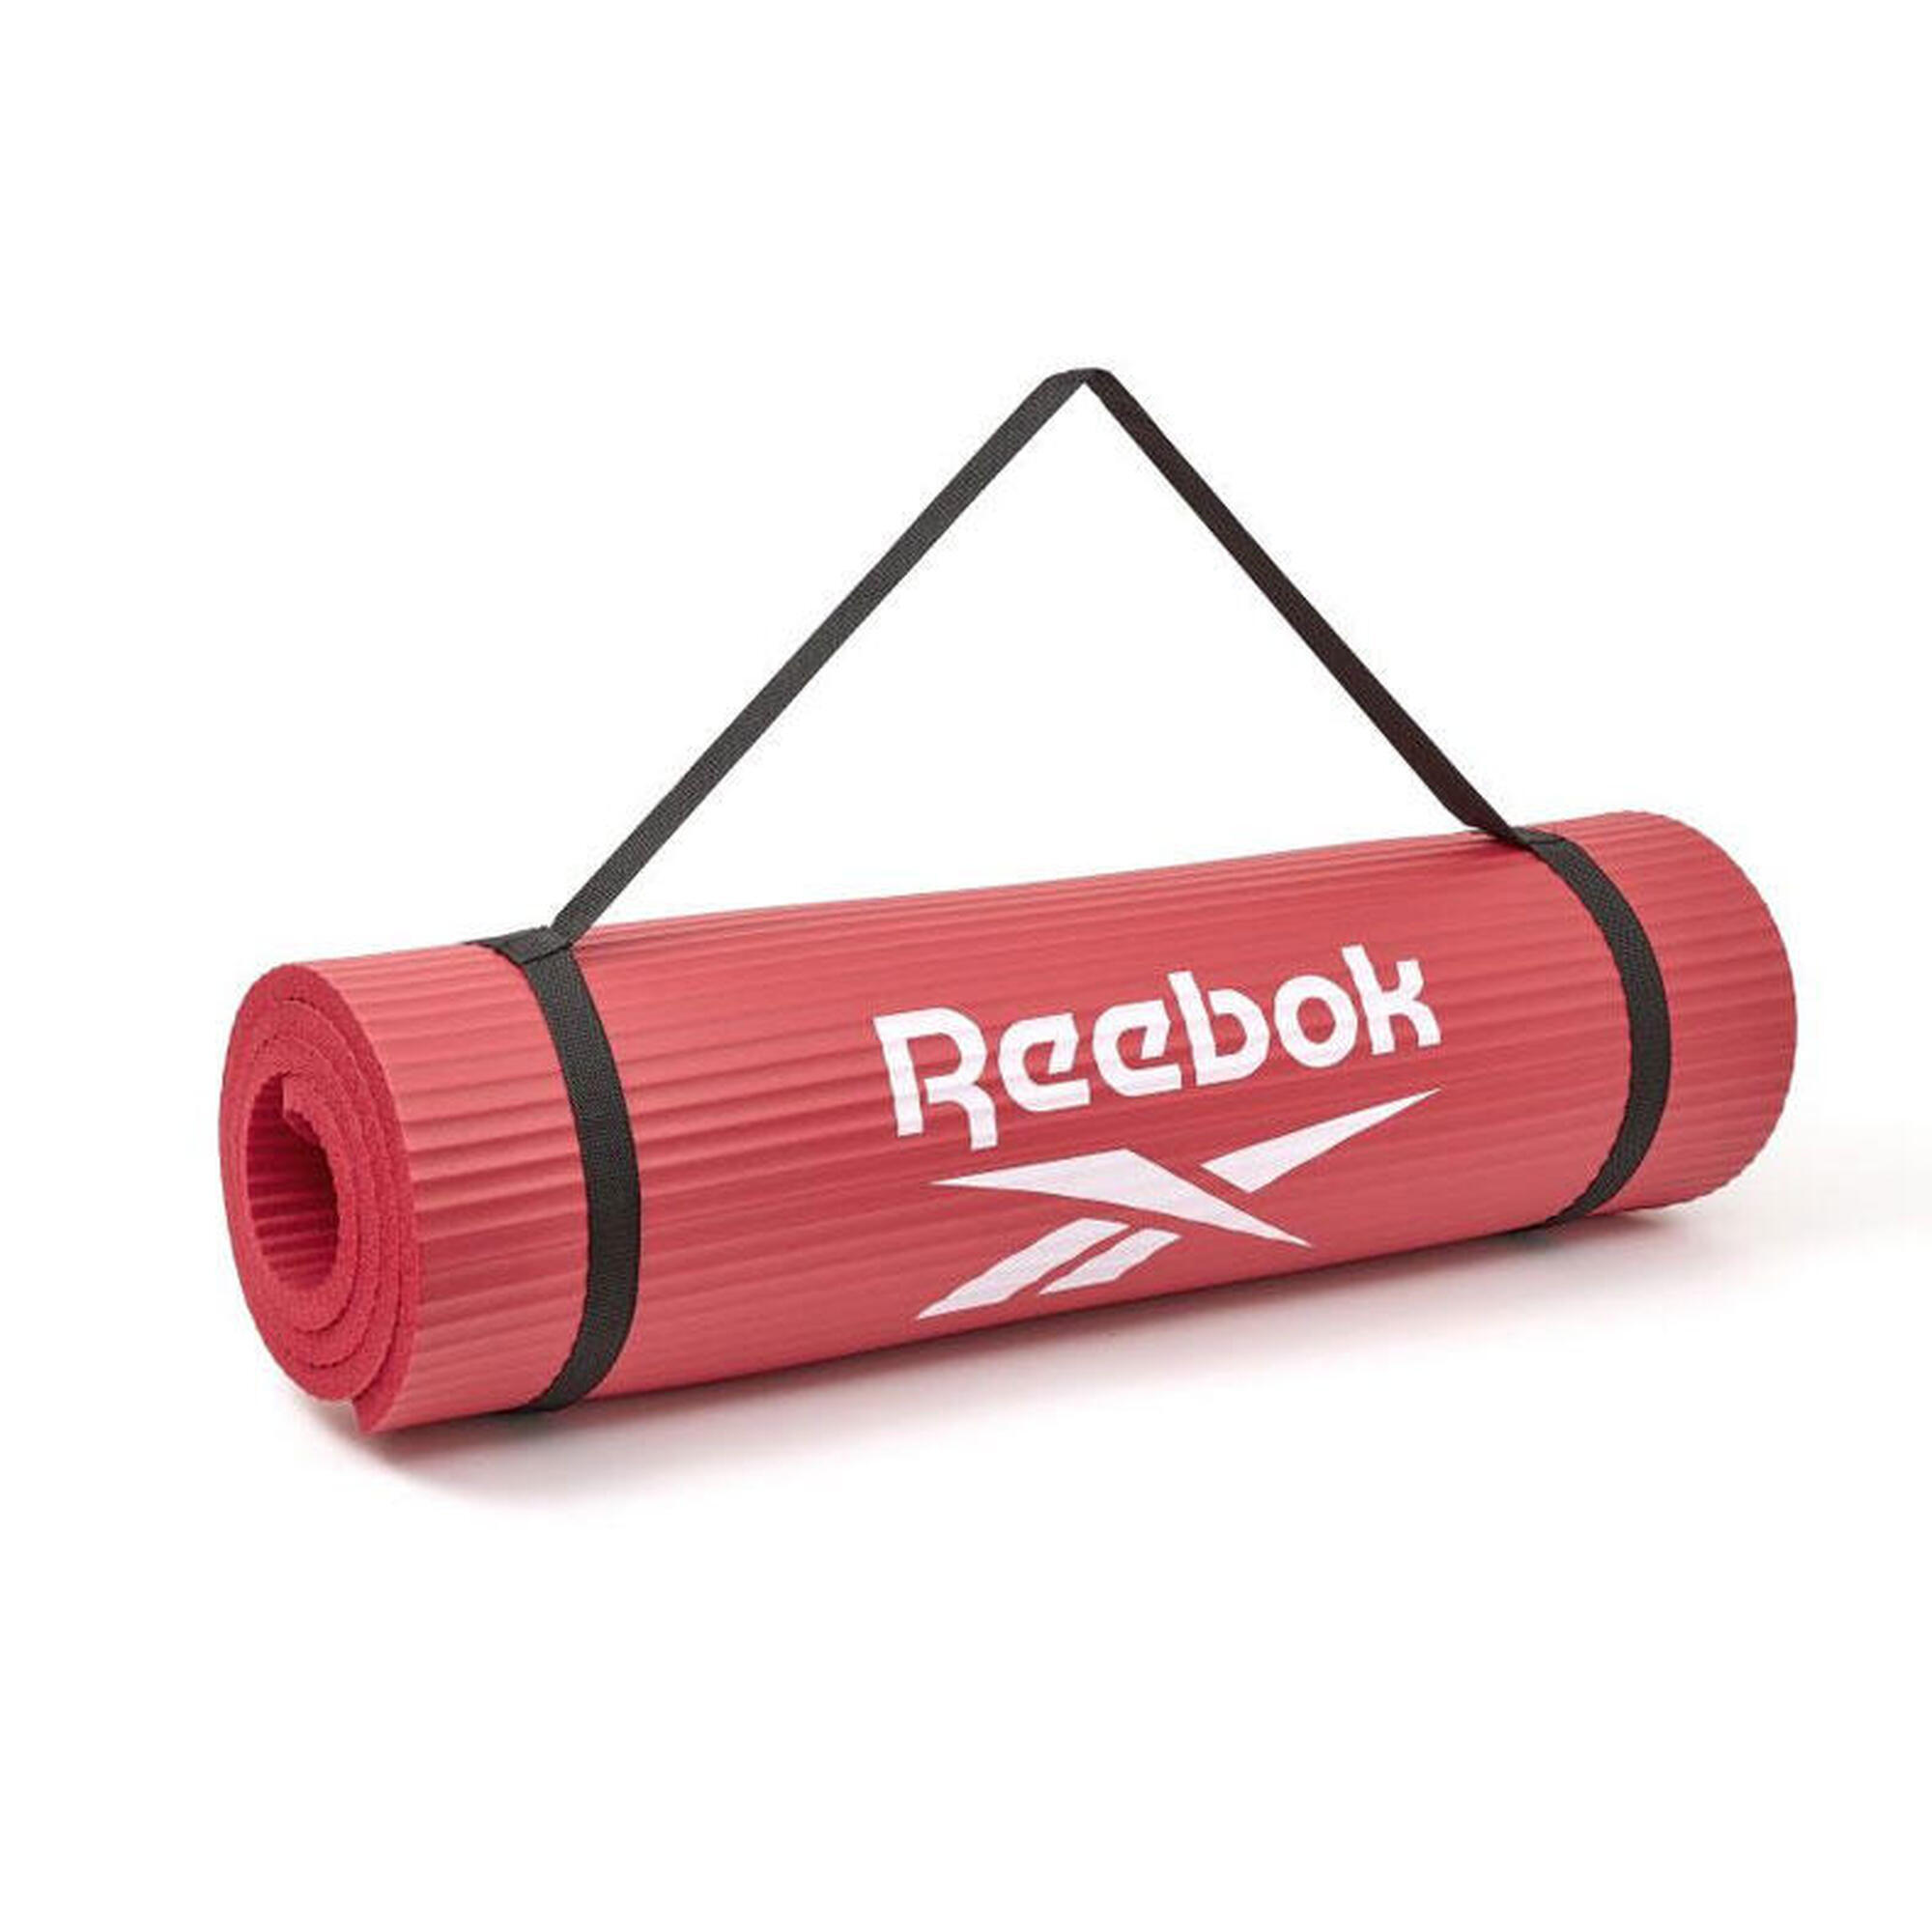 Reebok Trainingsmatte - 15mm - Rot